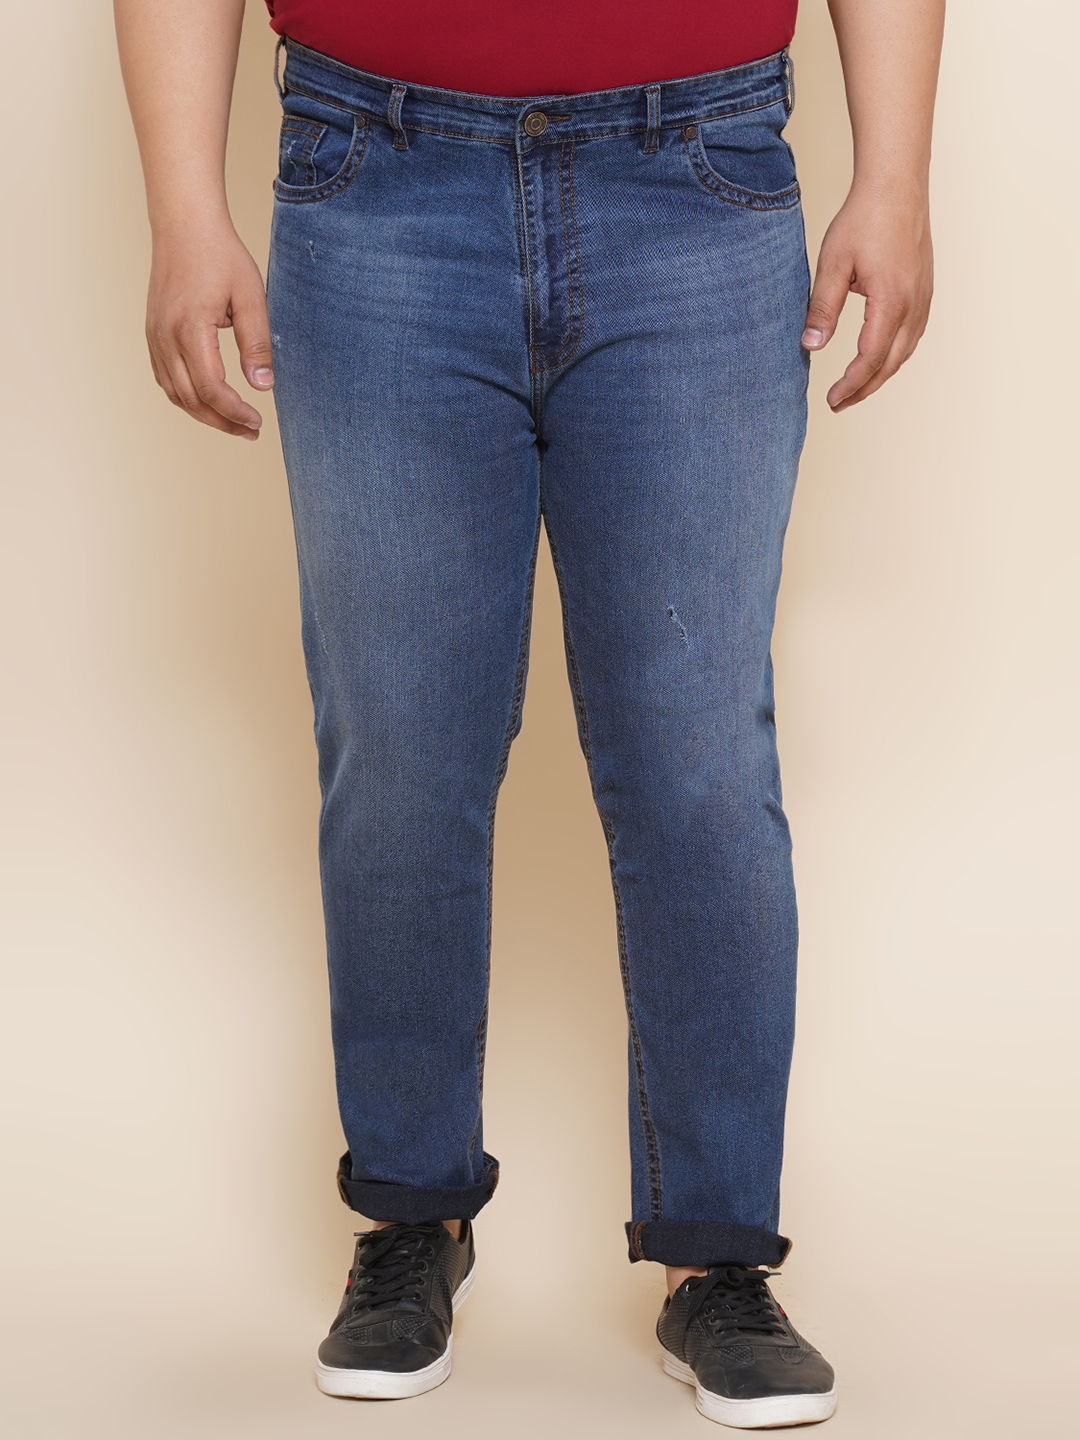 bottomwear/jeans/JPJ27017/jpj27017-1.jpg